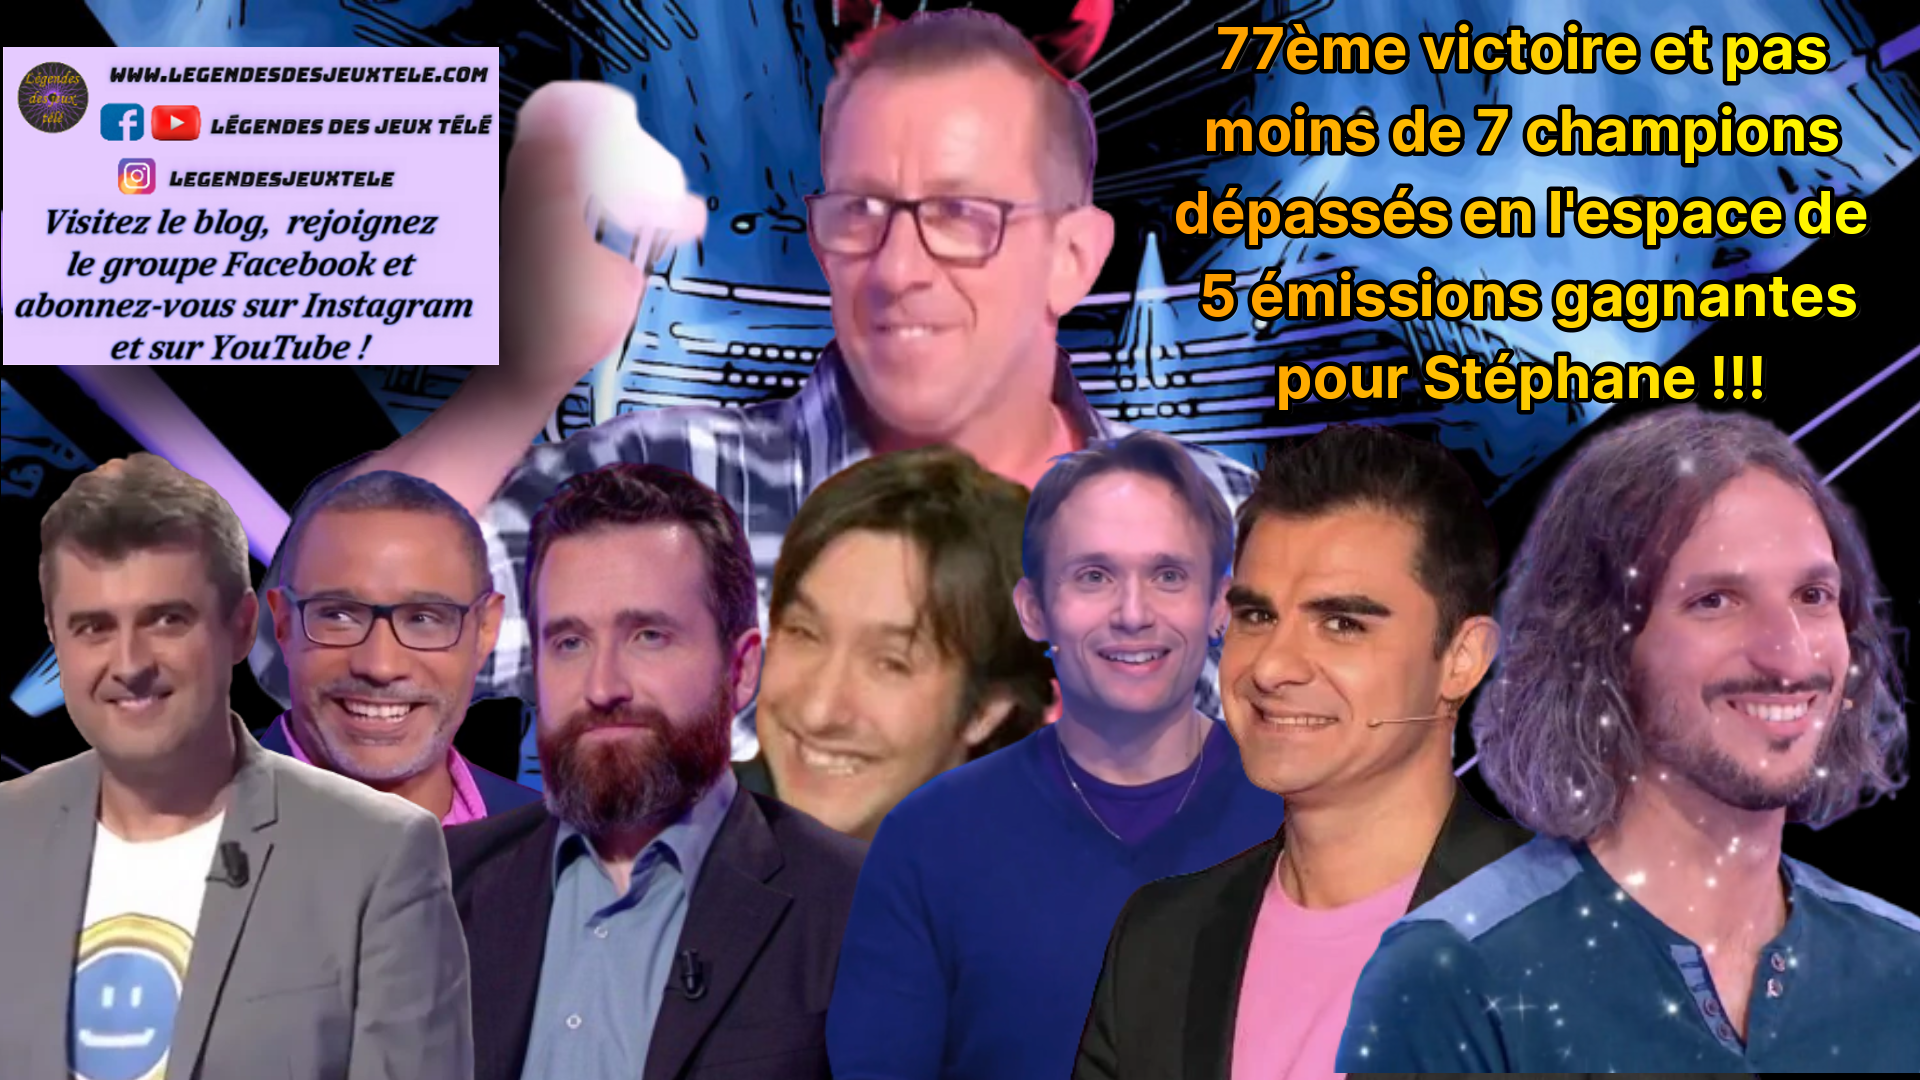 72, 73, 74, 75, 76, 77 victoires… Et une masse de champions de jeux TV dépassés par Stéphane des « douze coups de midi » !!!